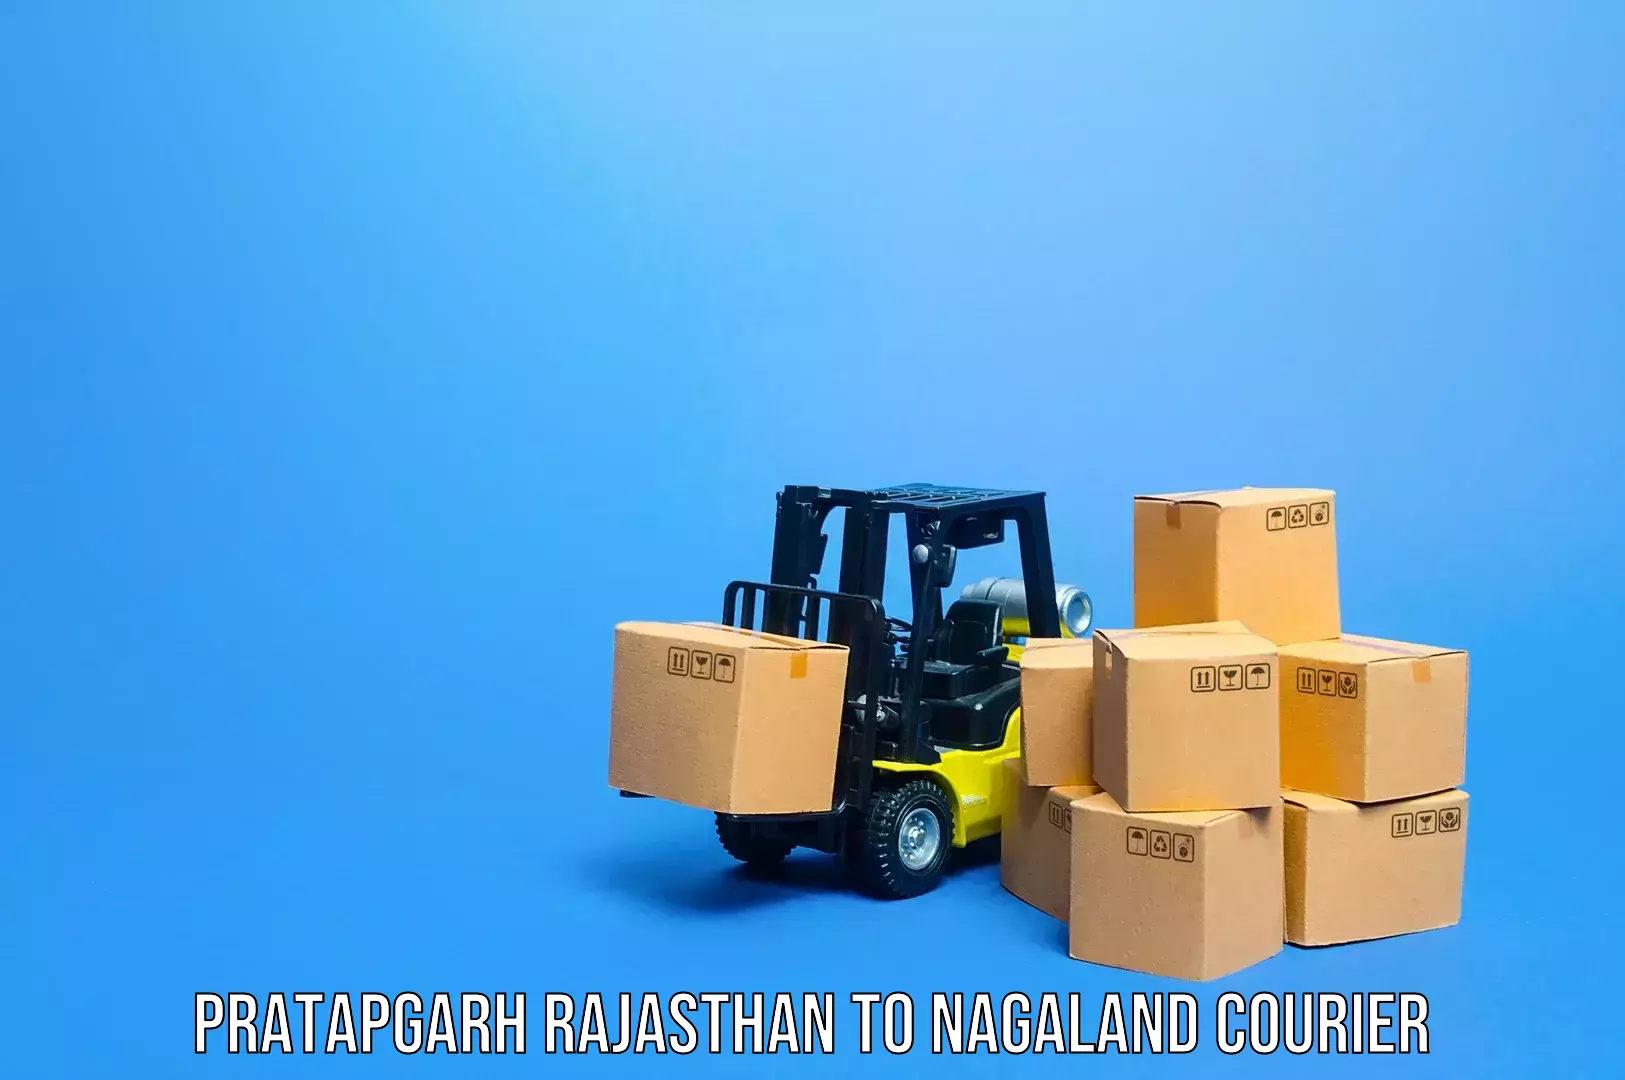 Baggage transport innovation Pratapgarh Rajasthan to NIT Nagaland